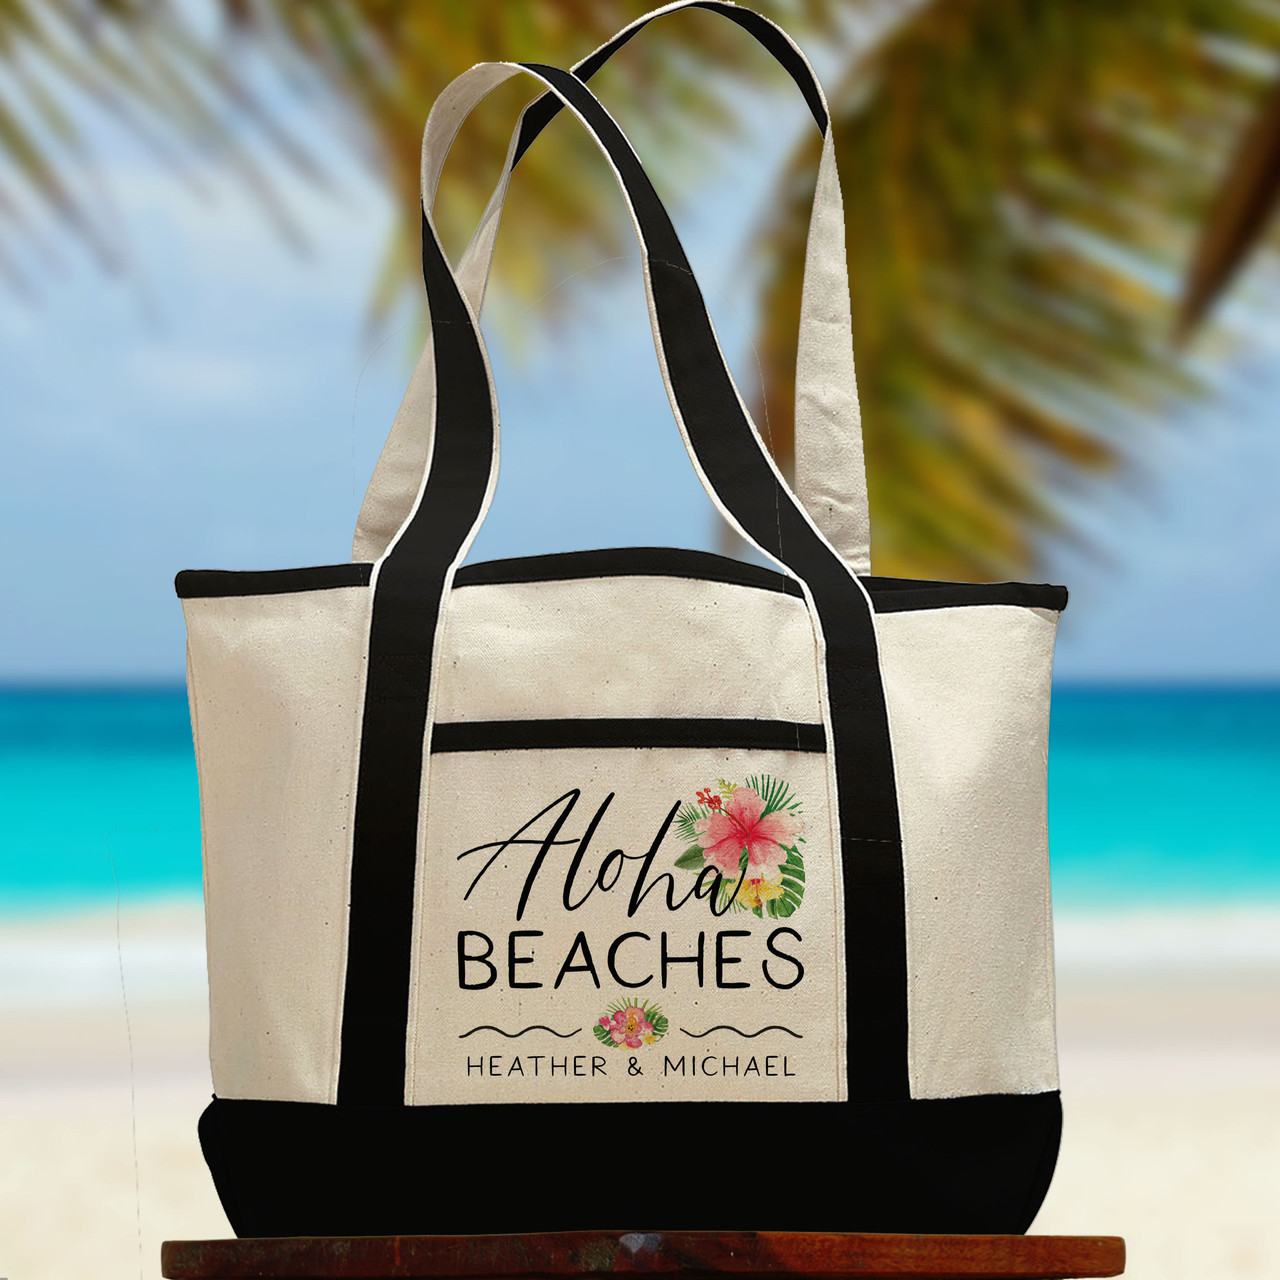 Tropical Aloha Beaches Beach Tote Bag